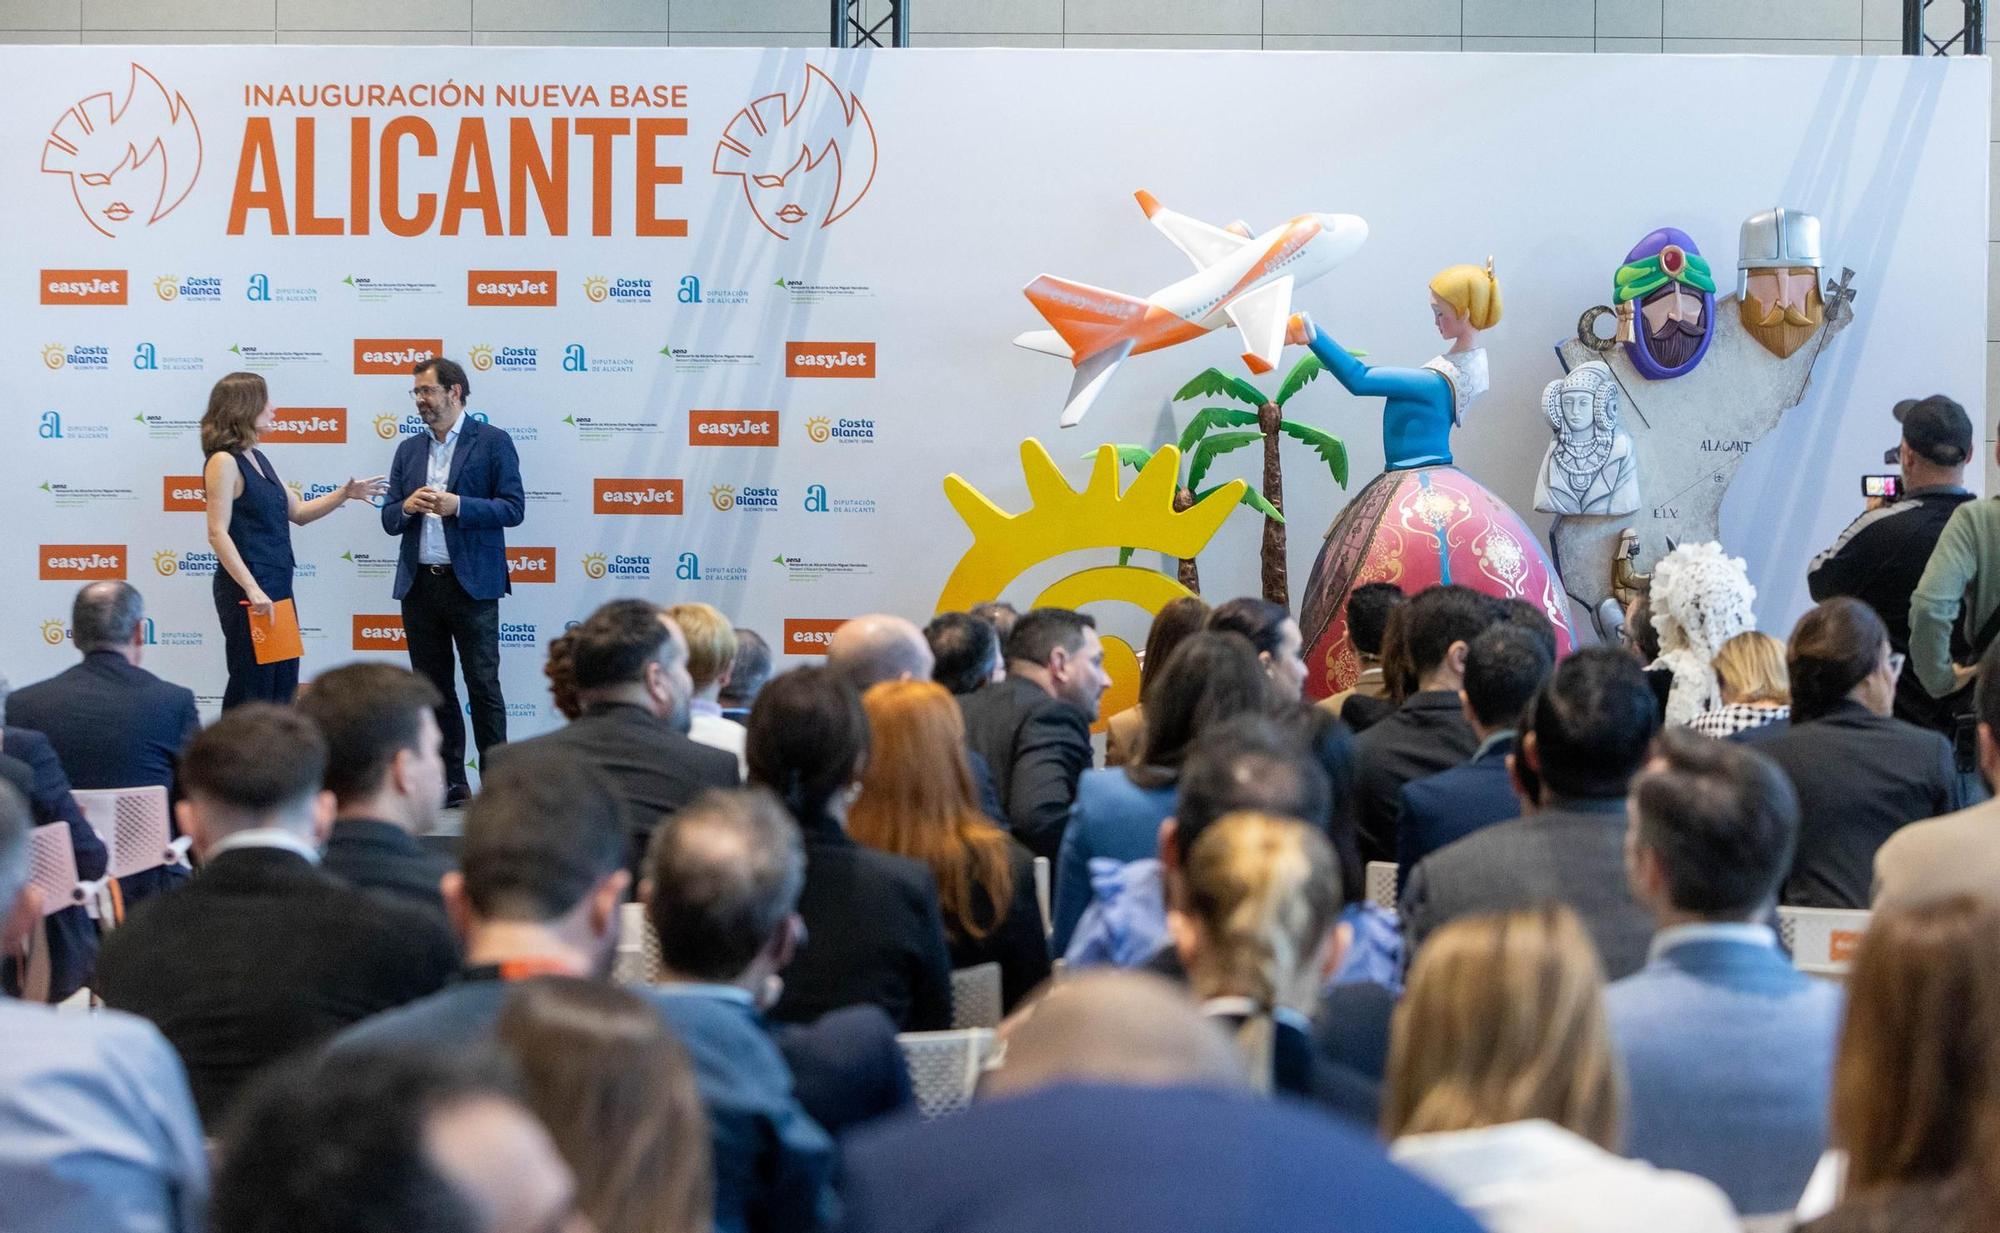 Presentación de la nueva base de Easyjet en el Aeropuerto de Alicante-Elche Miguel Hernández